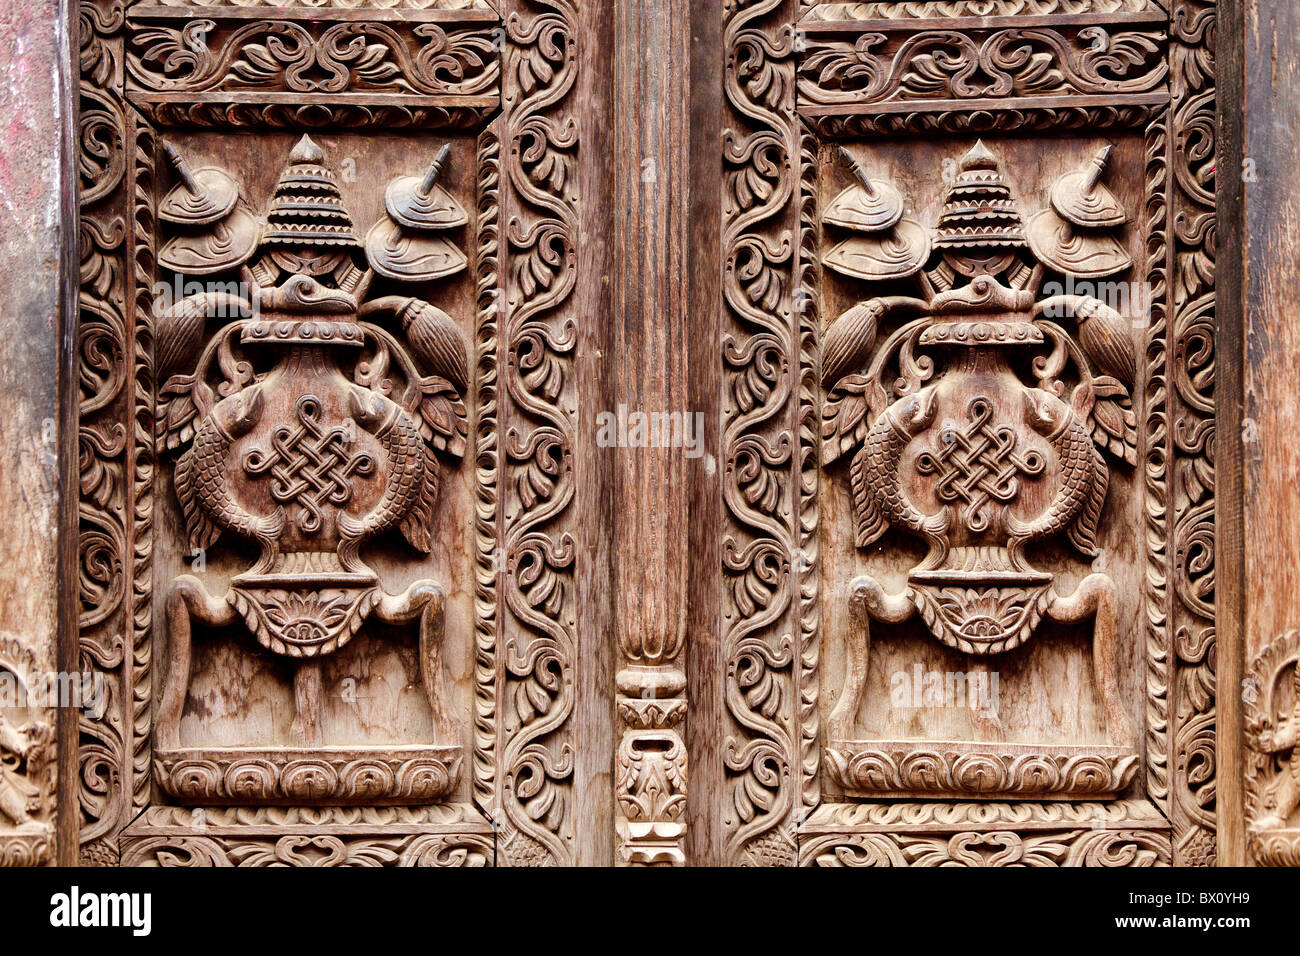 Temple hindou détail porte en bois sculpté, Bhaktapur, Népal Banque D'Images